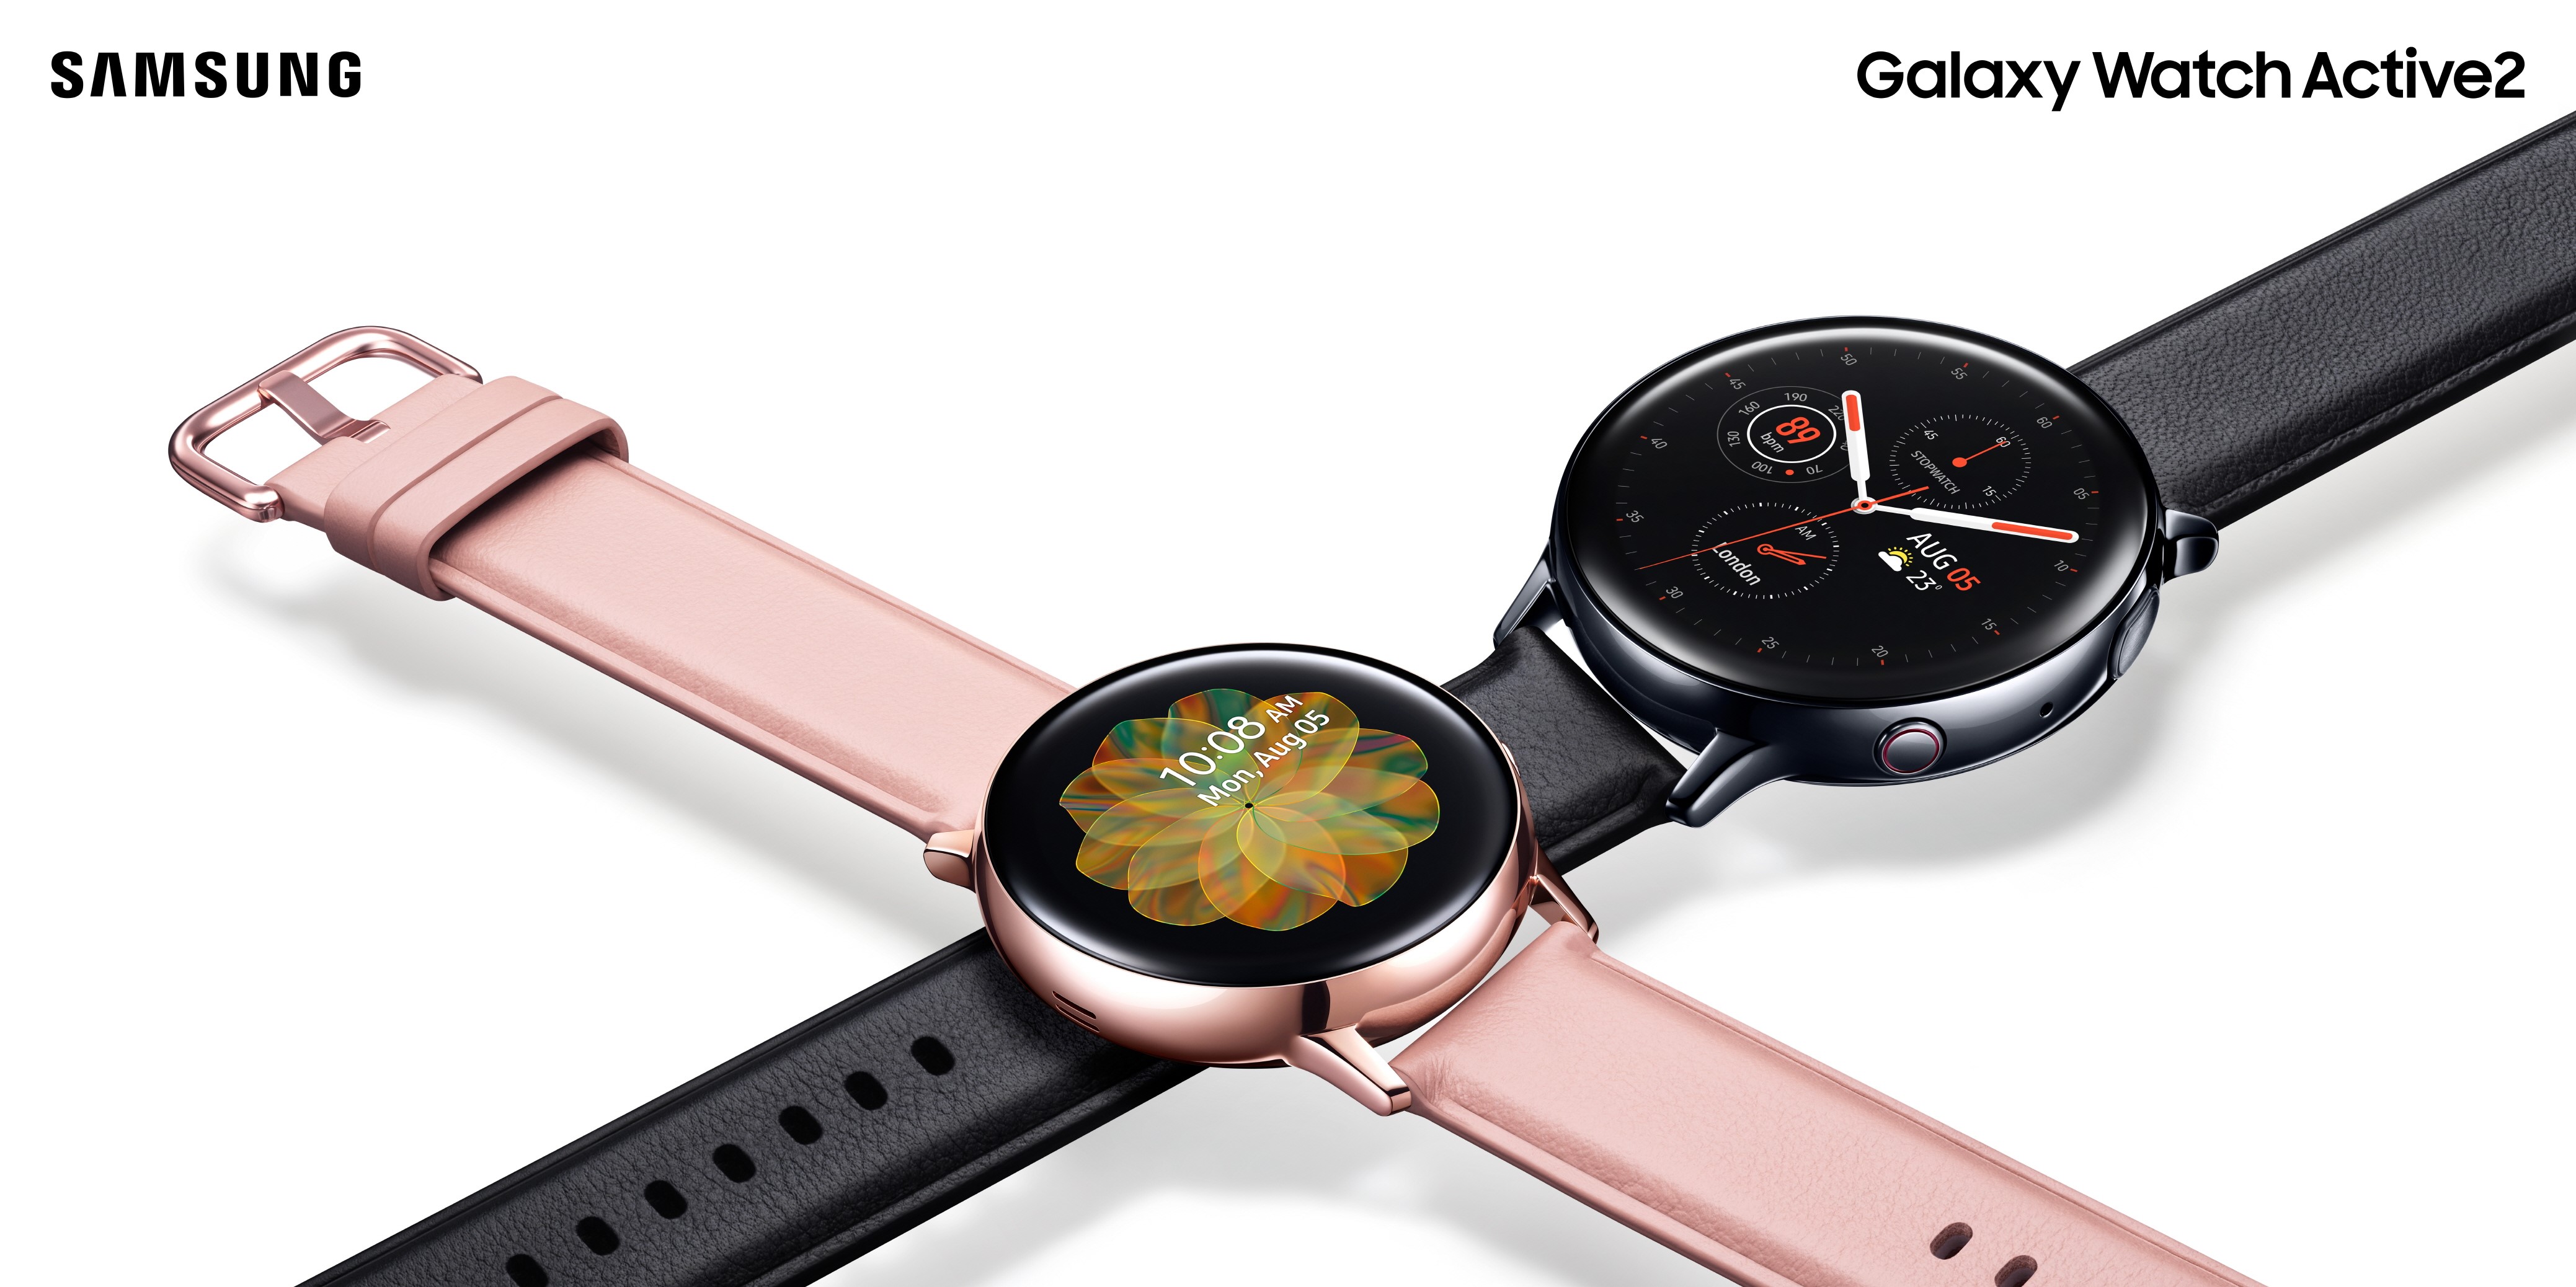 【快訊報報】自訂今天的搭配造型！Samsung Galaxy Watch Active 2 搭載 My Style 色彩擷取 任選錶面搭配專屬風格 - ACTIVE2, Apple Watch, Galaxy, Galaxy Watch Active, GALAXY WATCH ACTIVE 2, iOS, Samsung, SAMSUNG PAY, WATCH, 手錶, 智慧手錶 - 科技狗 3C DOG